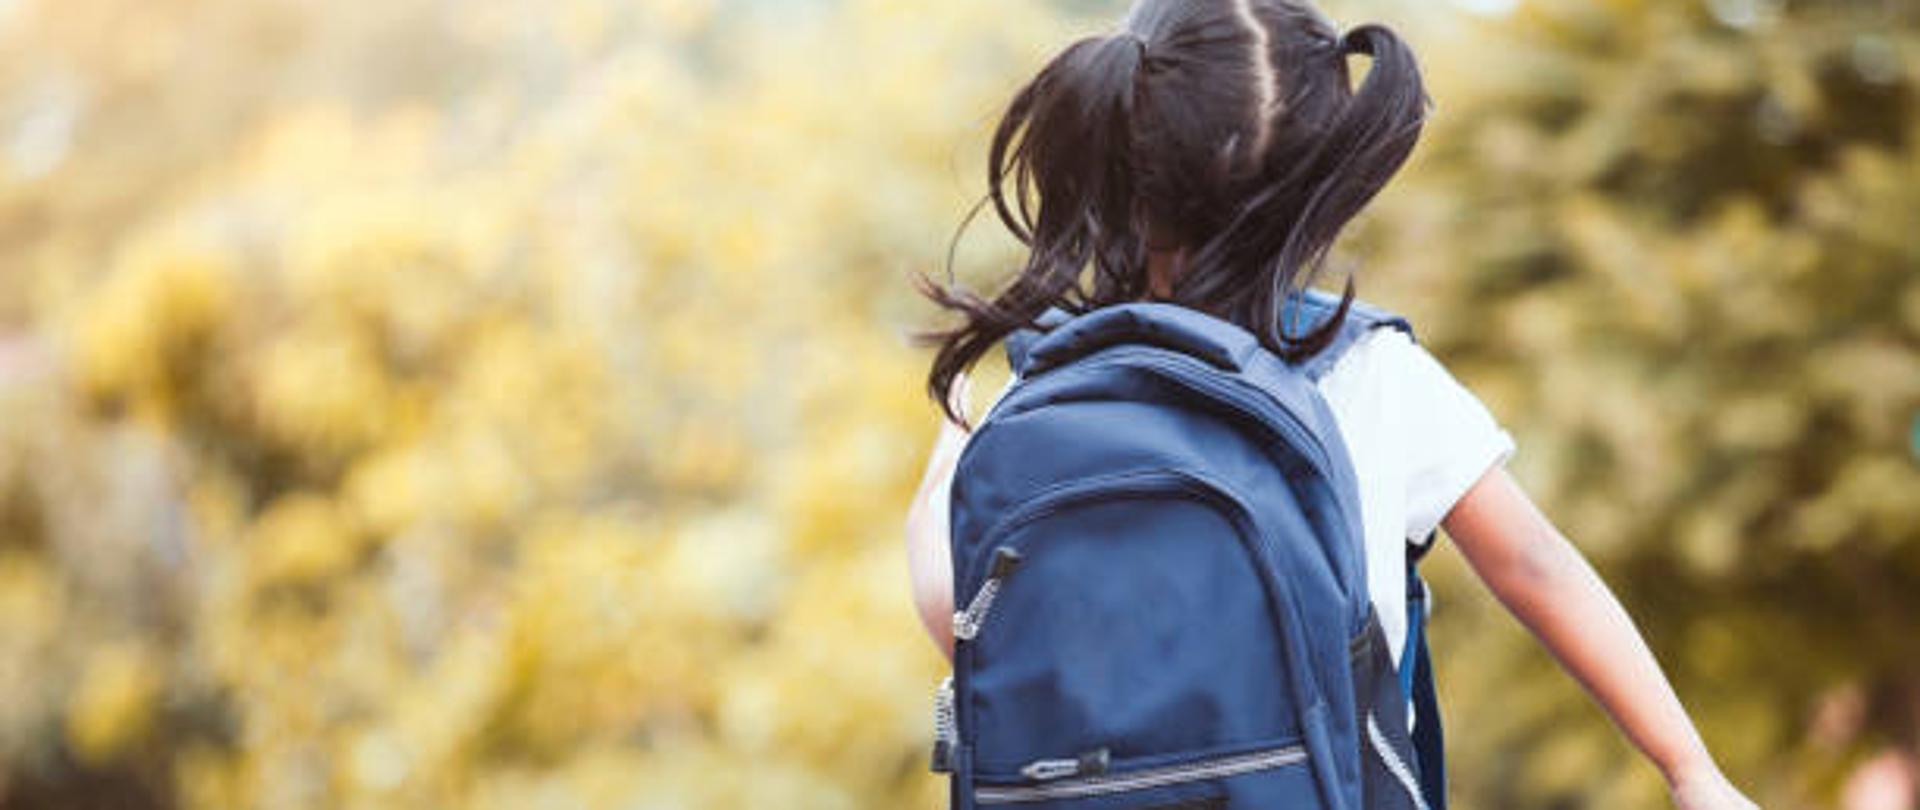 Na zdjęciu widać dziewczynkę z plecakiem która idzie do szkoły 